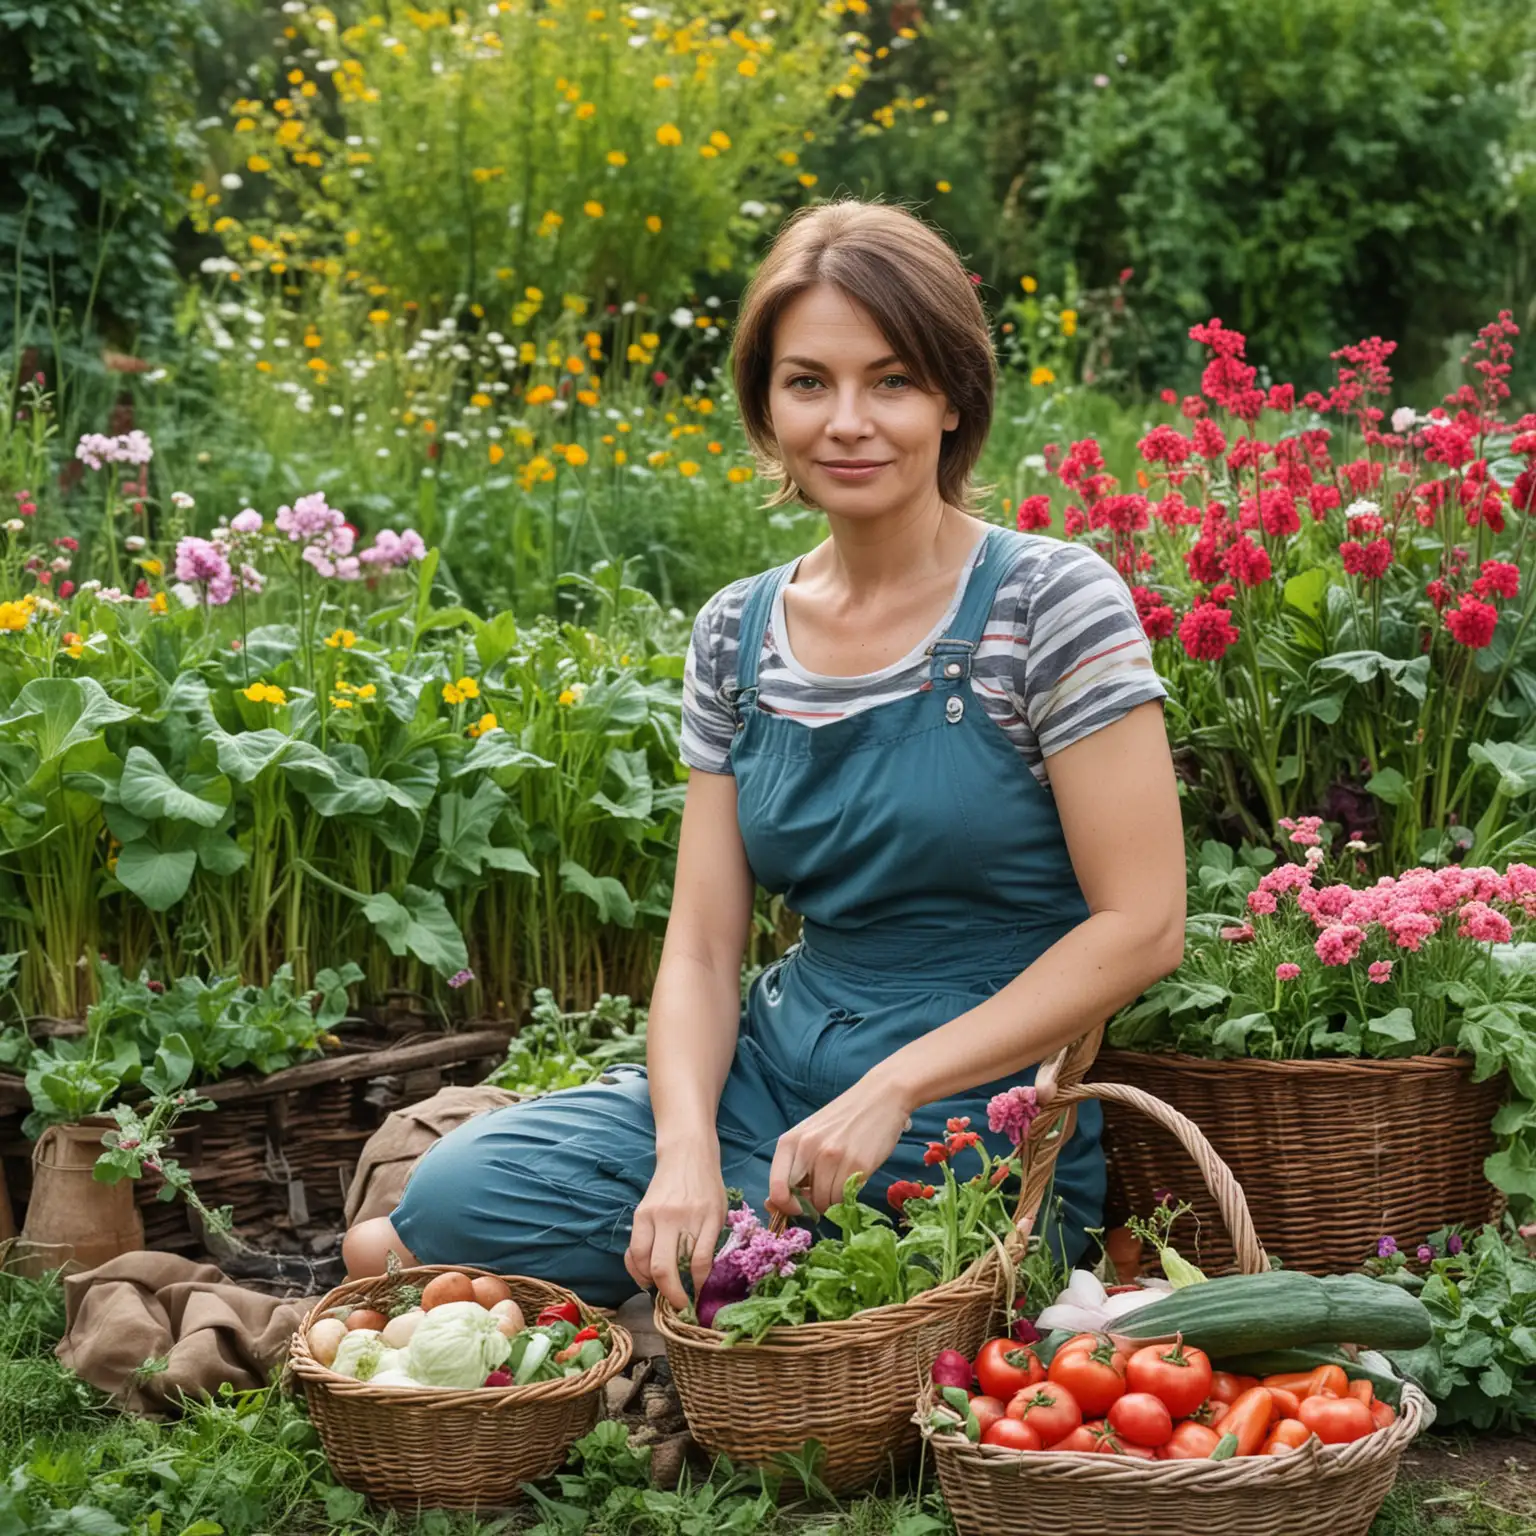 Russian-Woman-Gardener-with-Basket-of-Vegetables-in-Garden